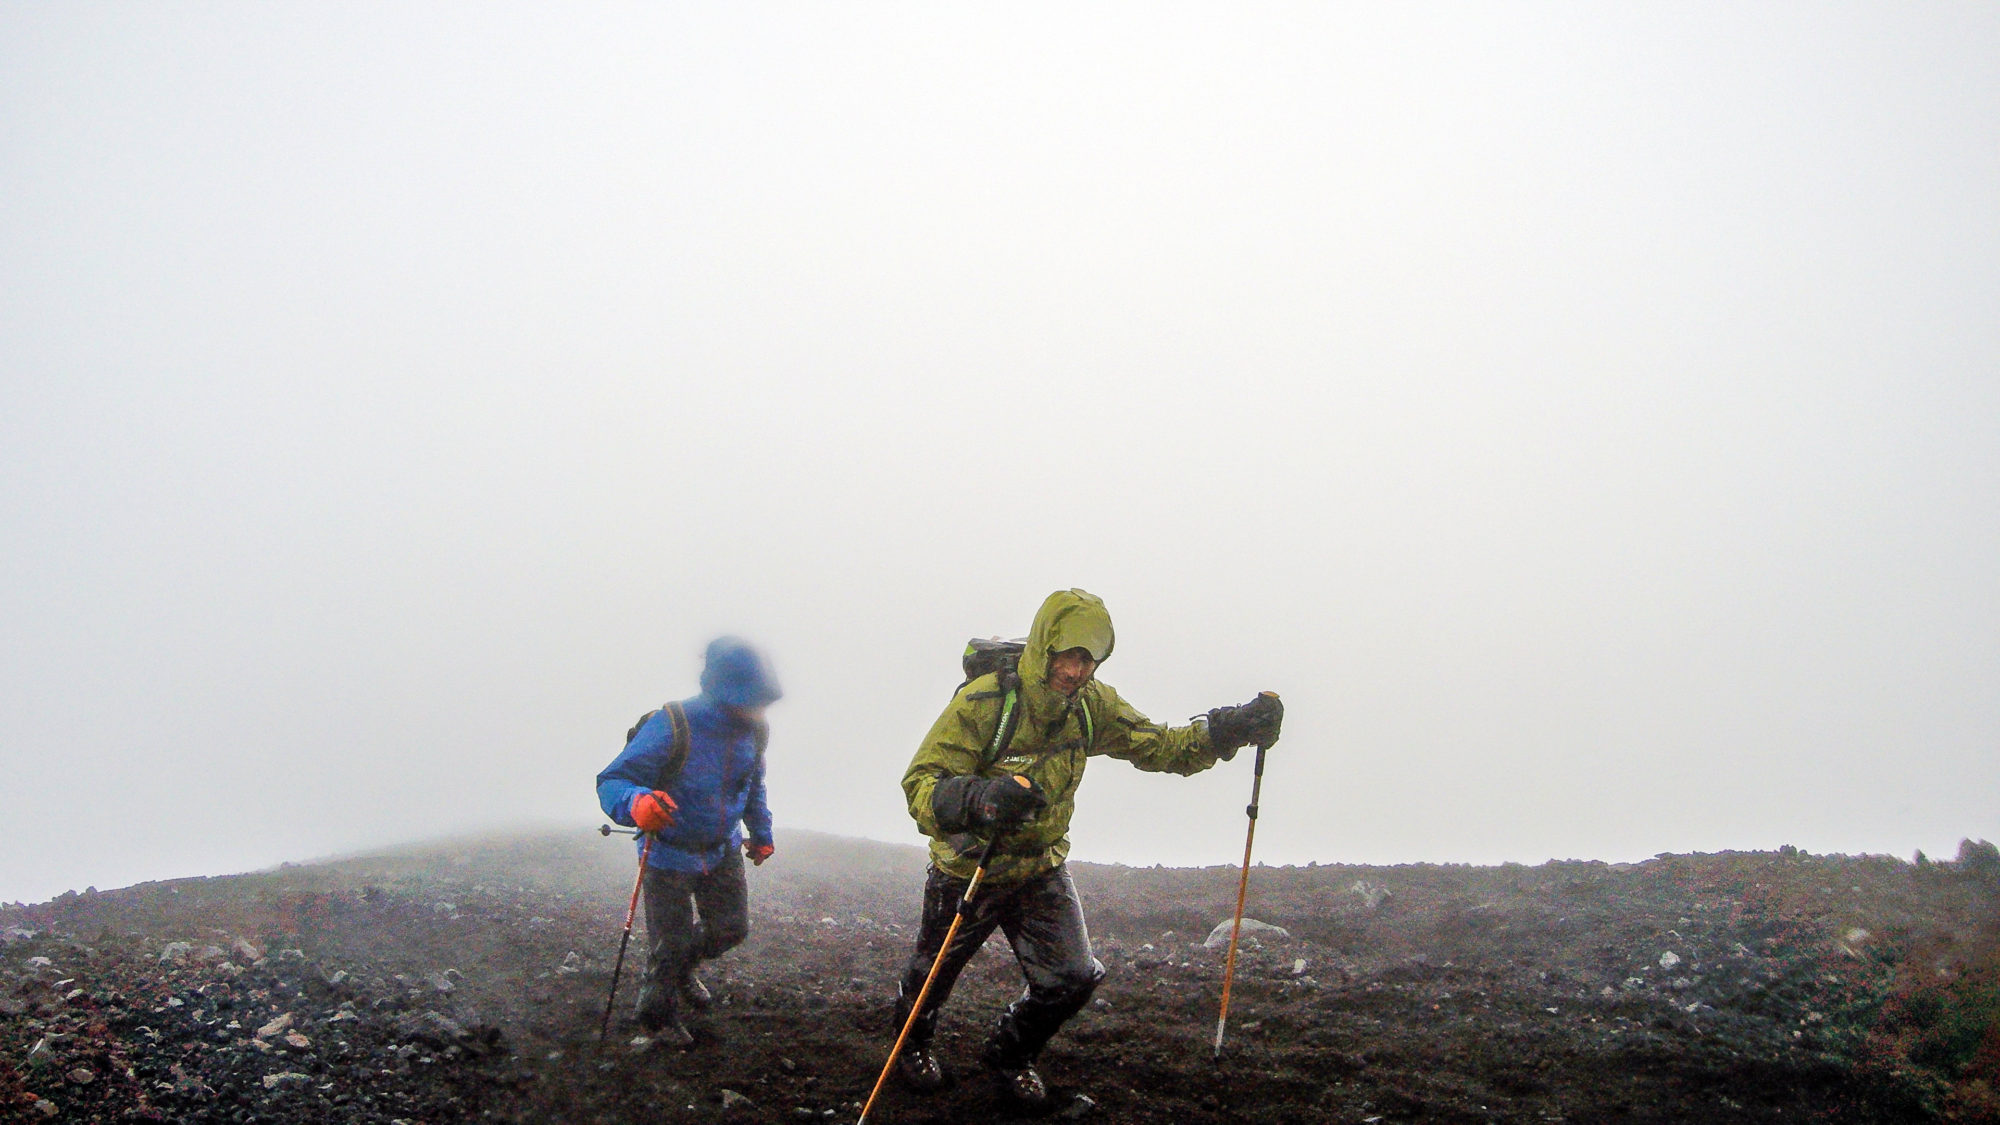 Foto di albi zucchi cammina, seguito da una guida verso la cima del vulcano